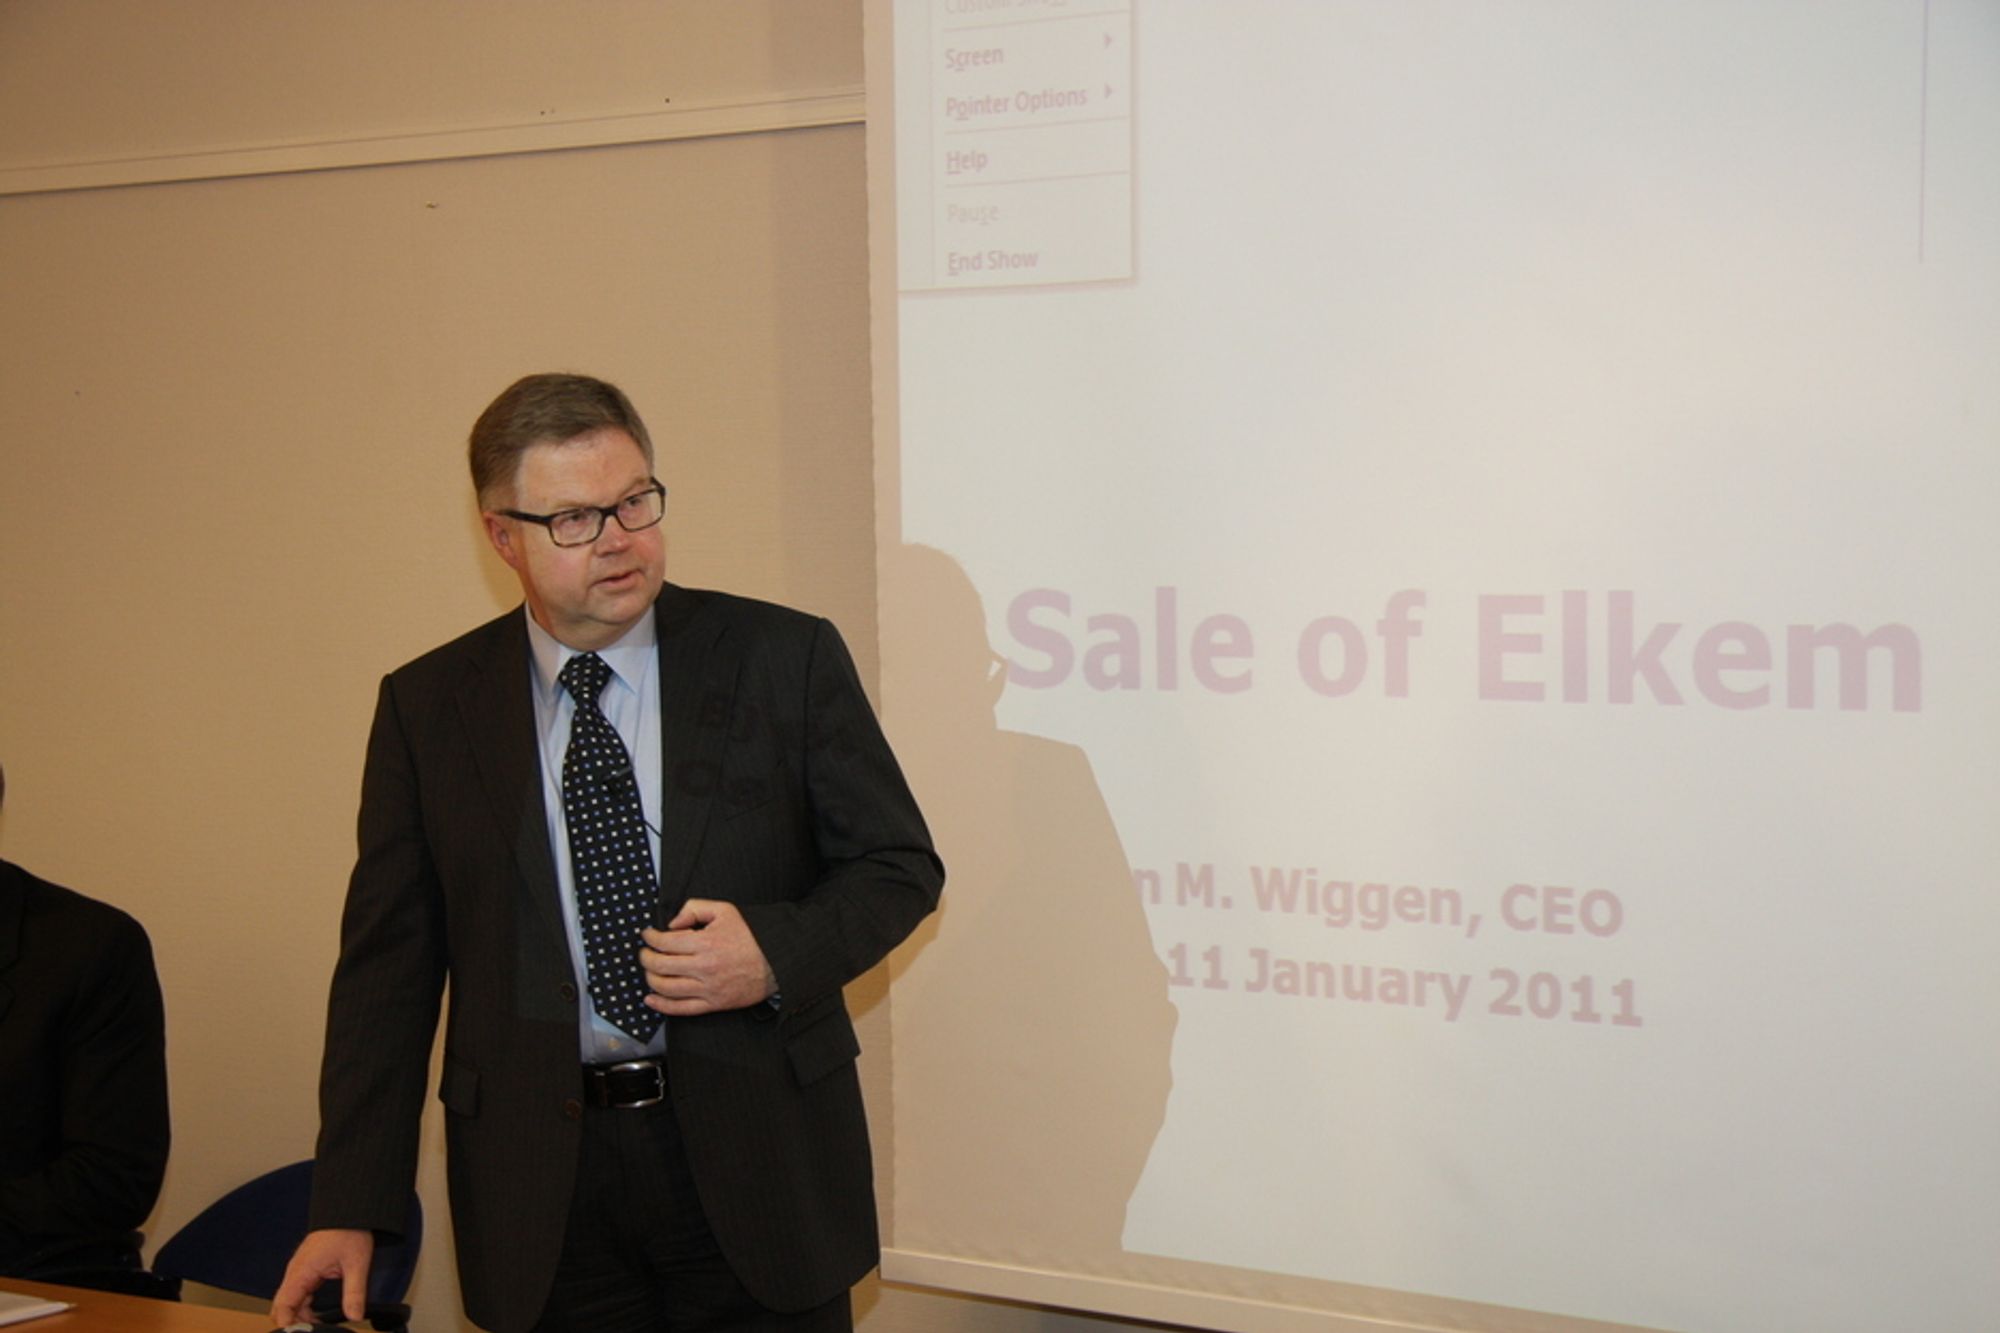 ELKEM BLIR KINESISK: ¿ Dette styrker Elkem internasjonalt. Det er viktig at det investeres videre i Elkem. Det er også viktig at forsknings- og utviklingsvirksomheten i selskapet blir i Norge, sier Orkla-direktør Bjørn Wiggen.